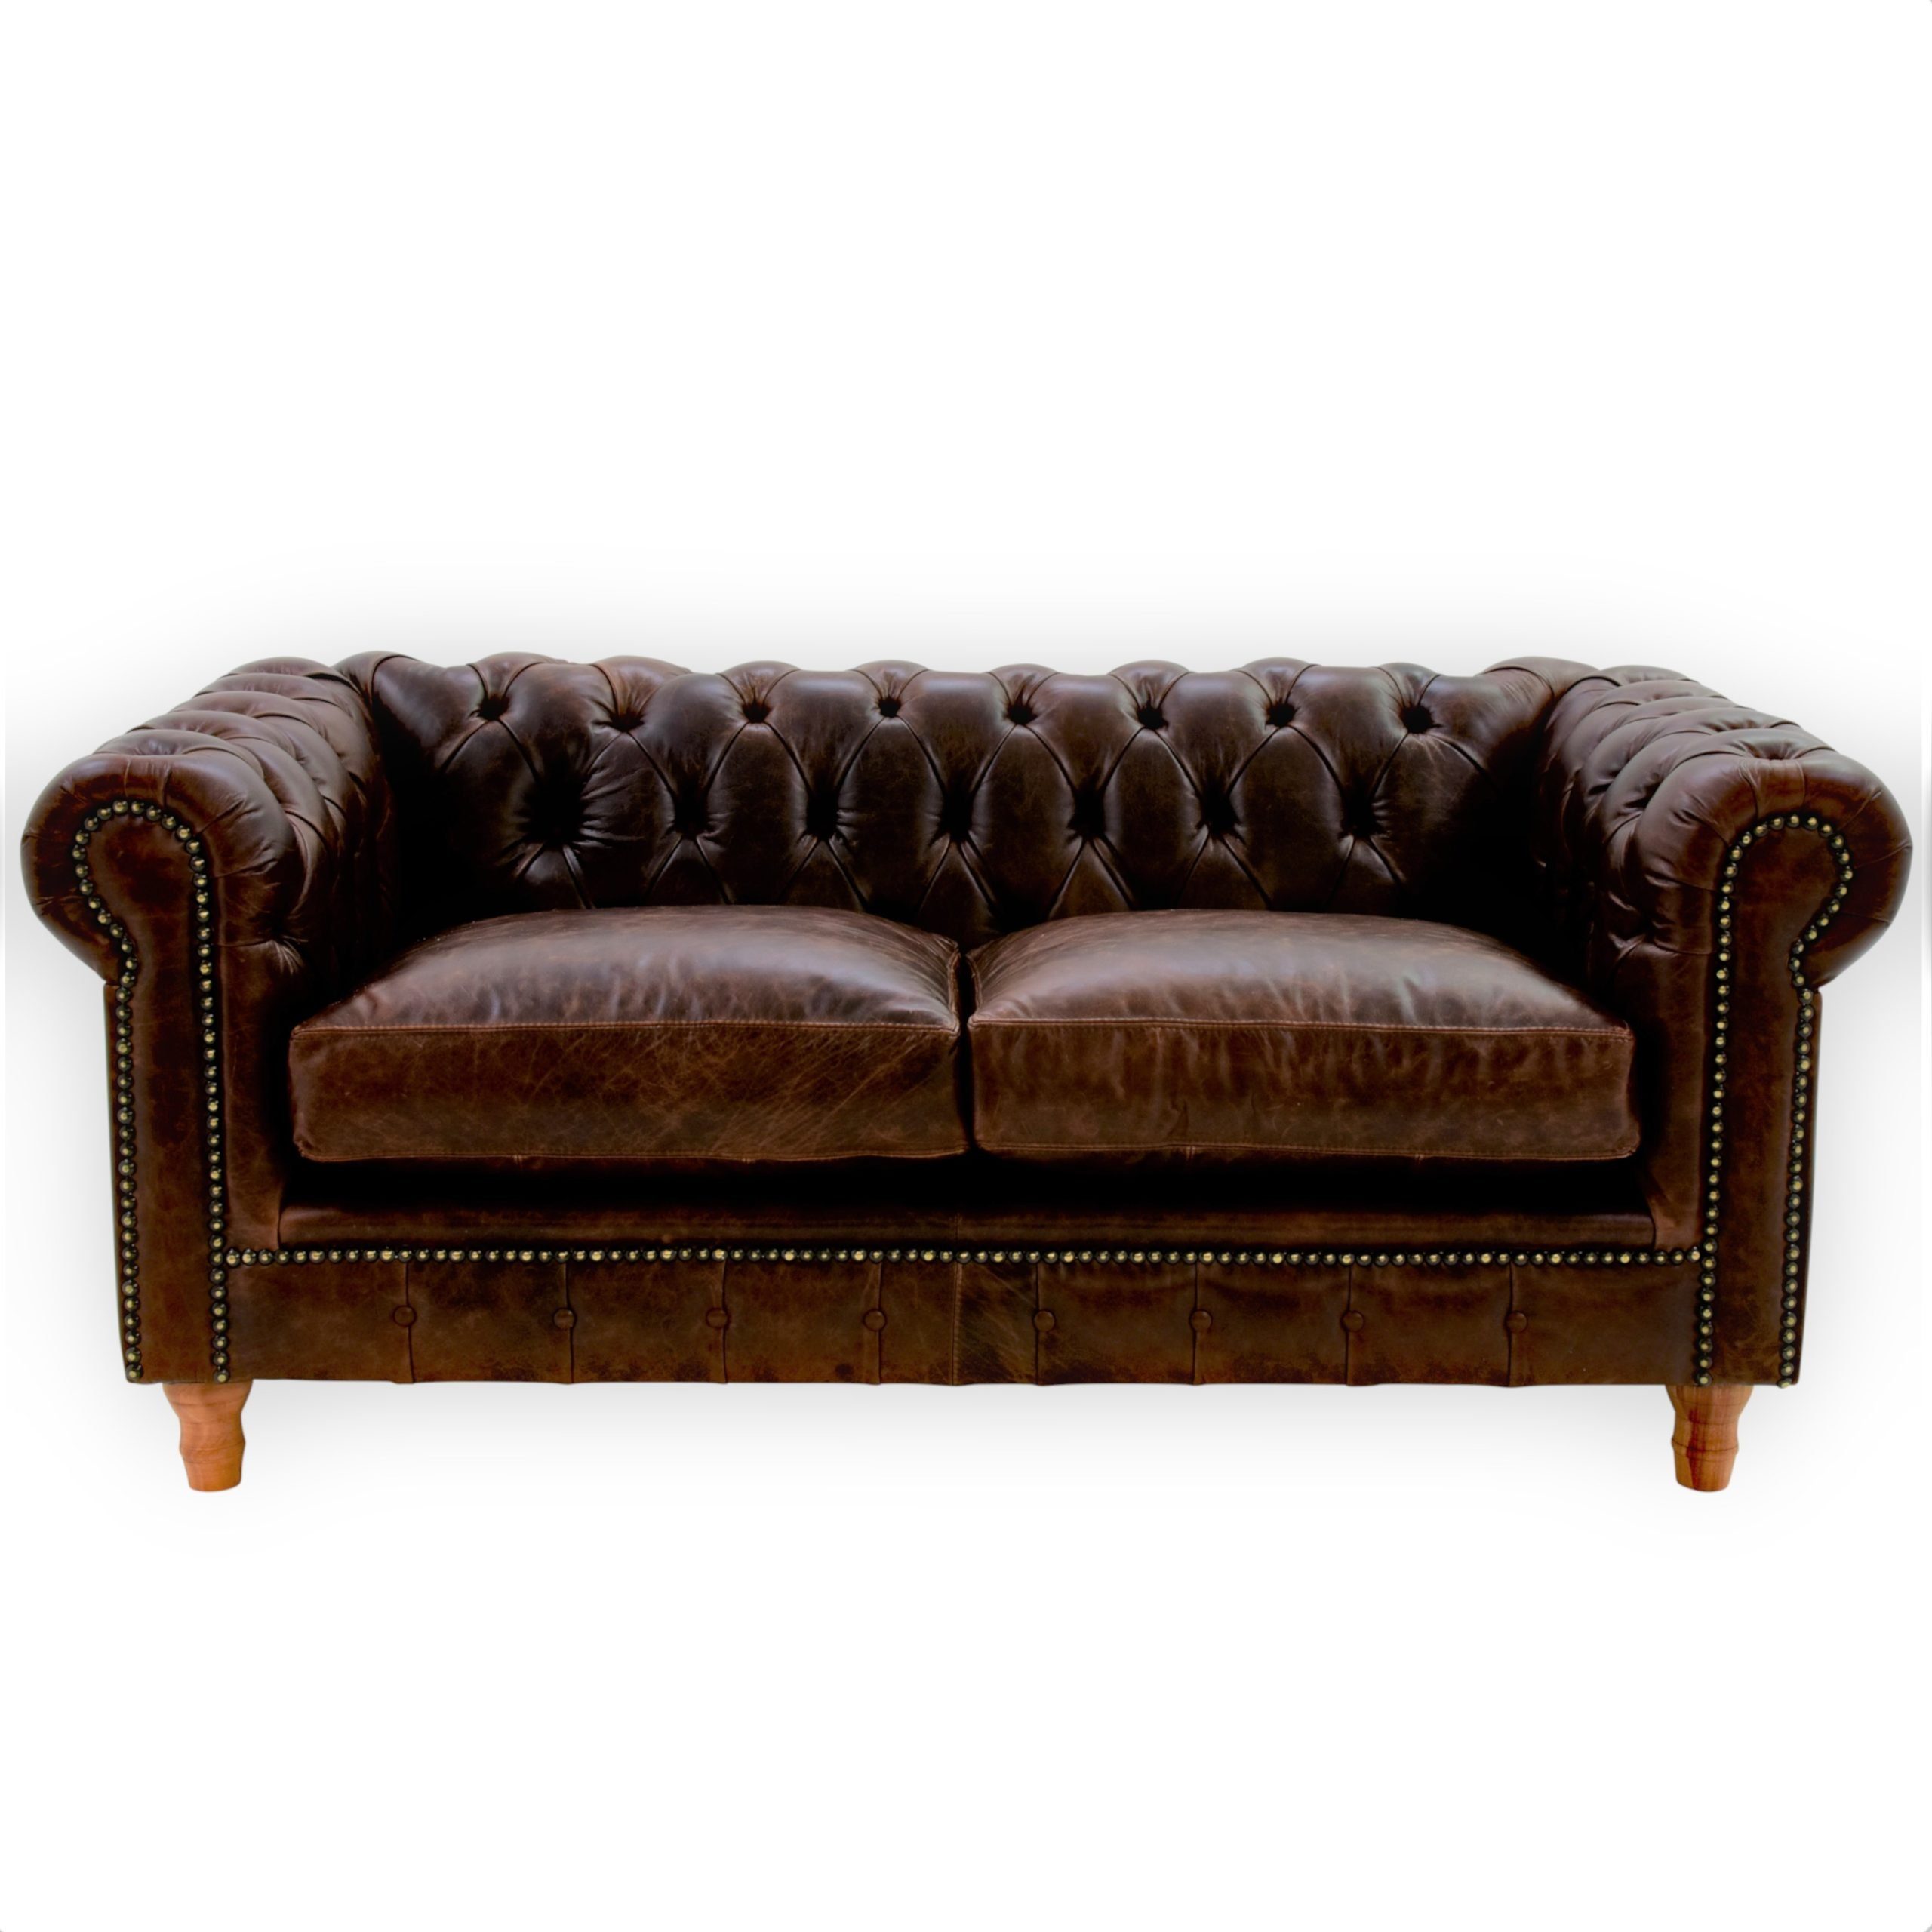 JVmoebel Sofa Design Leder Sofa Couch - Chesterfield Polster Dreisitzer, Made in Europe Braun | Alle Sofas